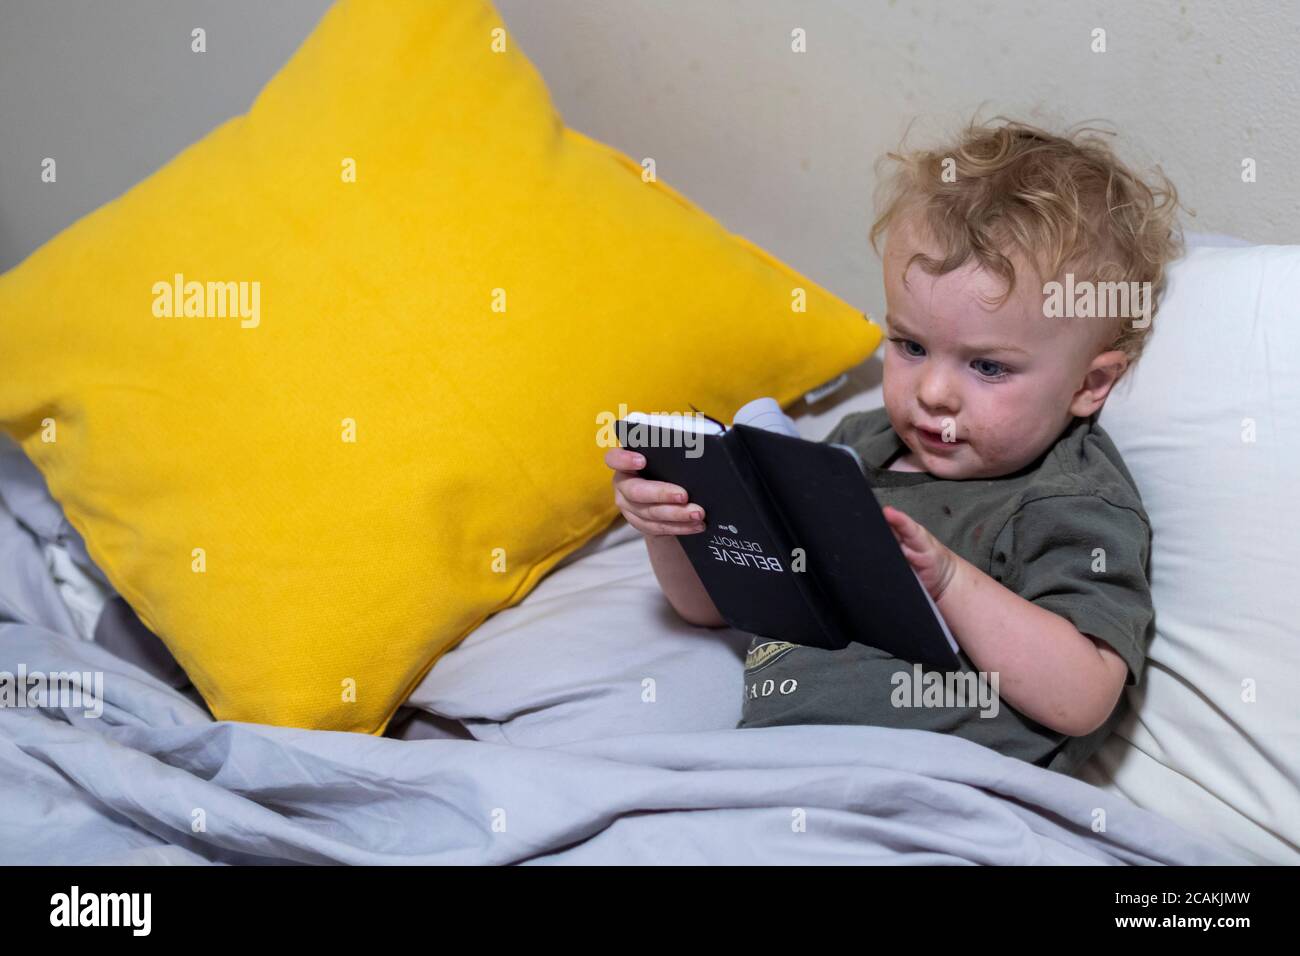 Denver, Colorado - Hendrix Hjermstad, de dos años, tiene un libro boca abajo mientras pretende leer. Foto de stock